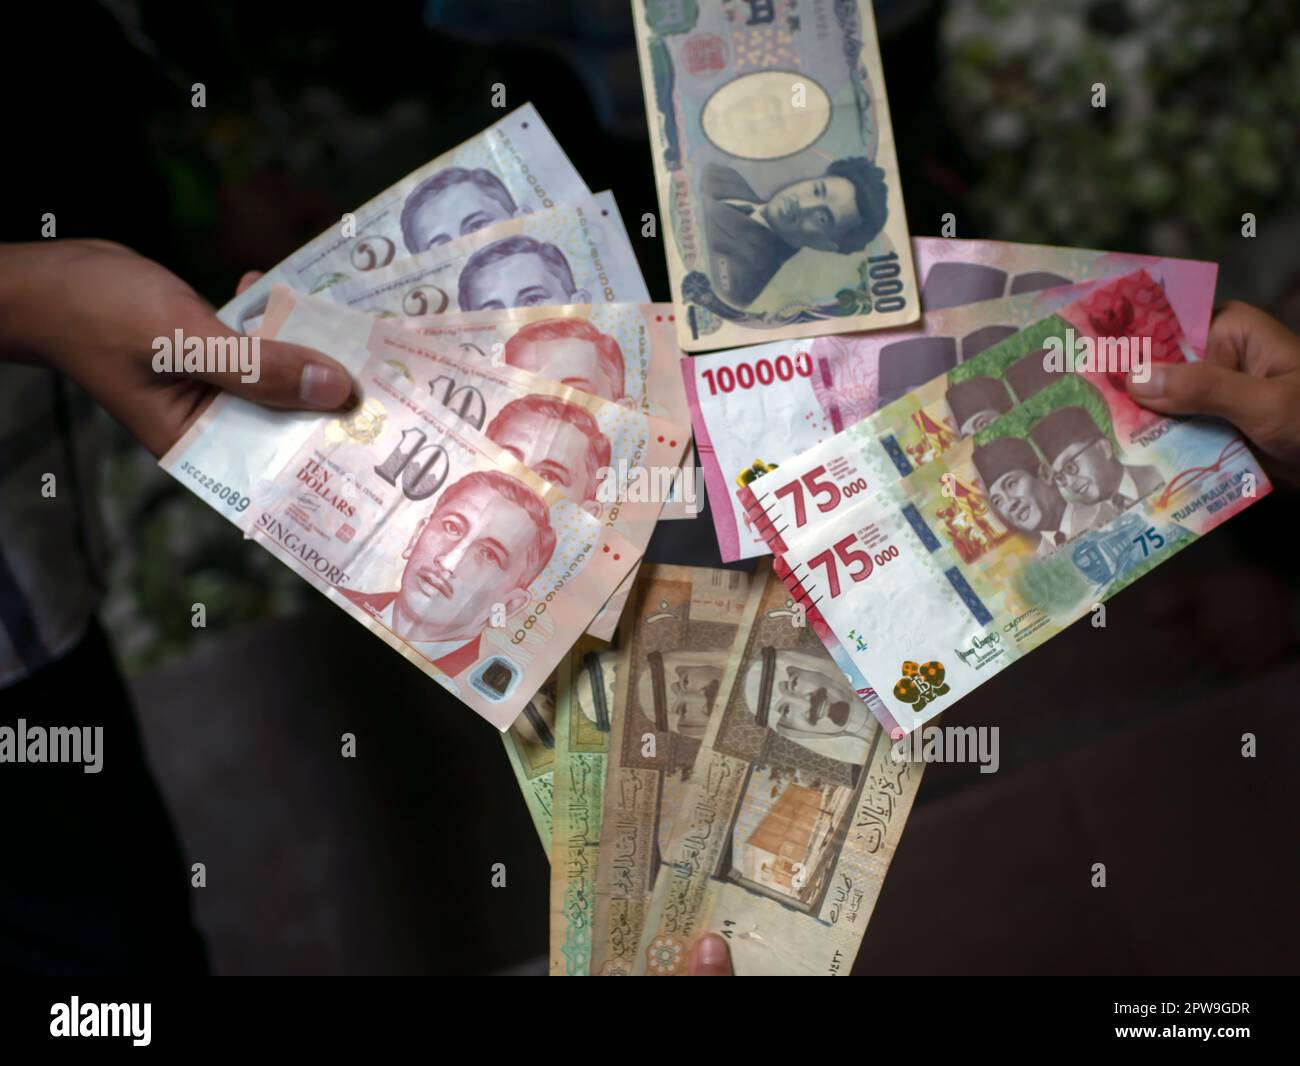 Asiatisches Kind, das indonesische Rupien, Singapur-Dollar, Saudi-Arabien-Rial und Japan-Yen-Geld hält, oberflächliche Konzentration Stockfoto